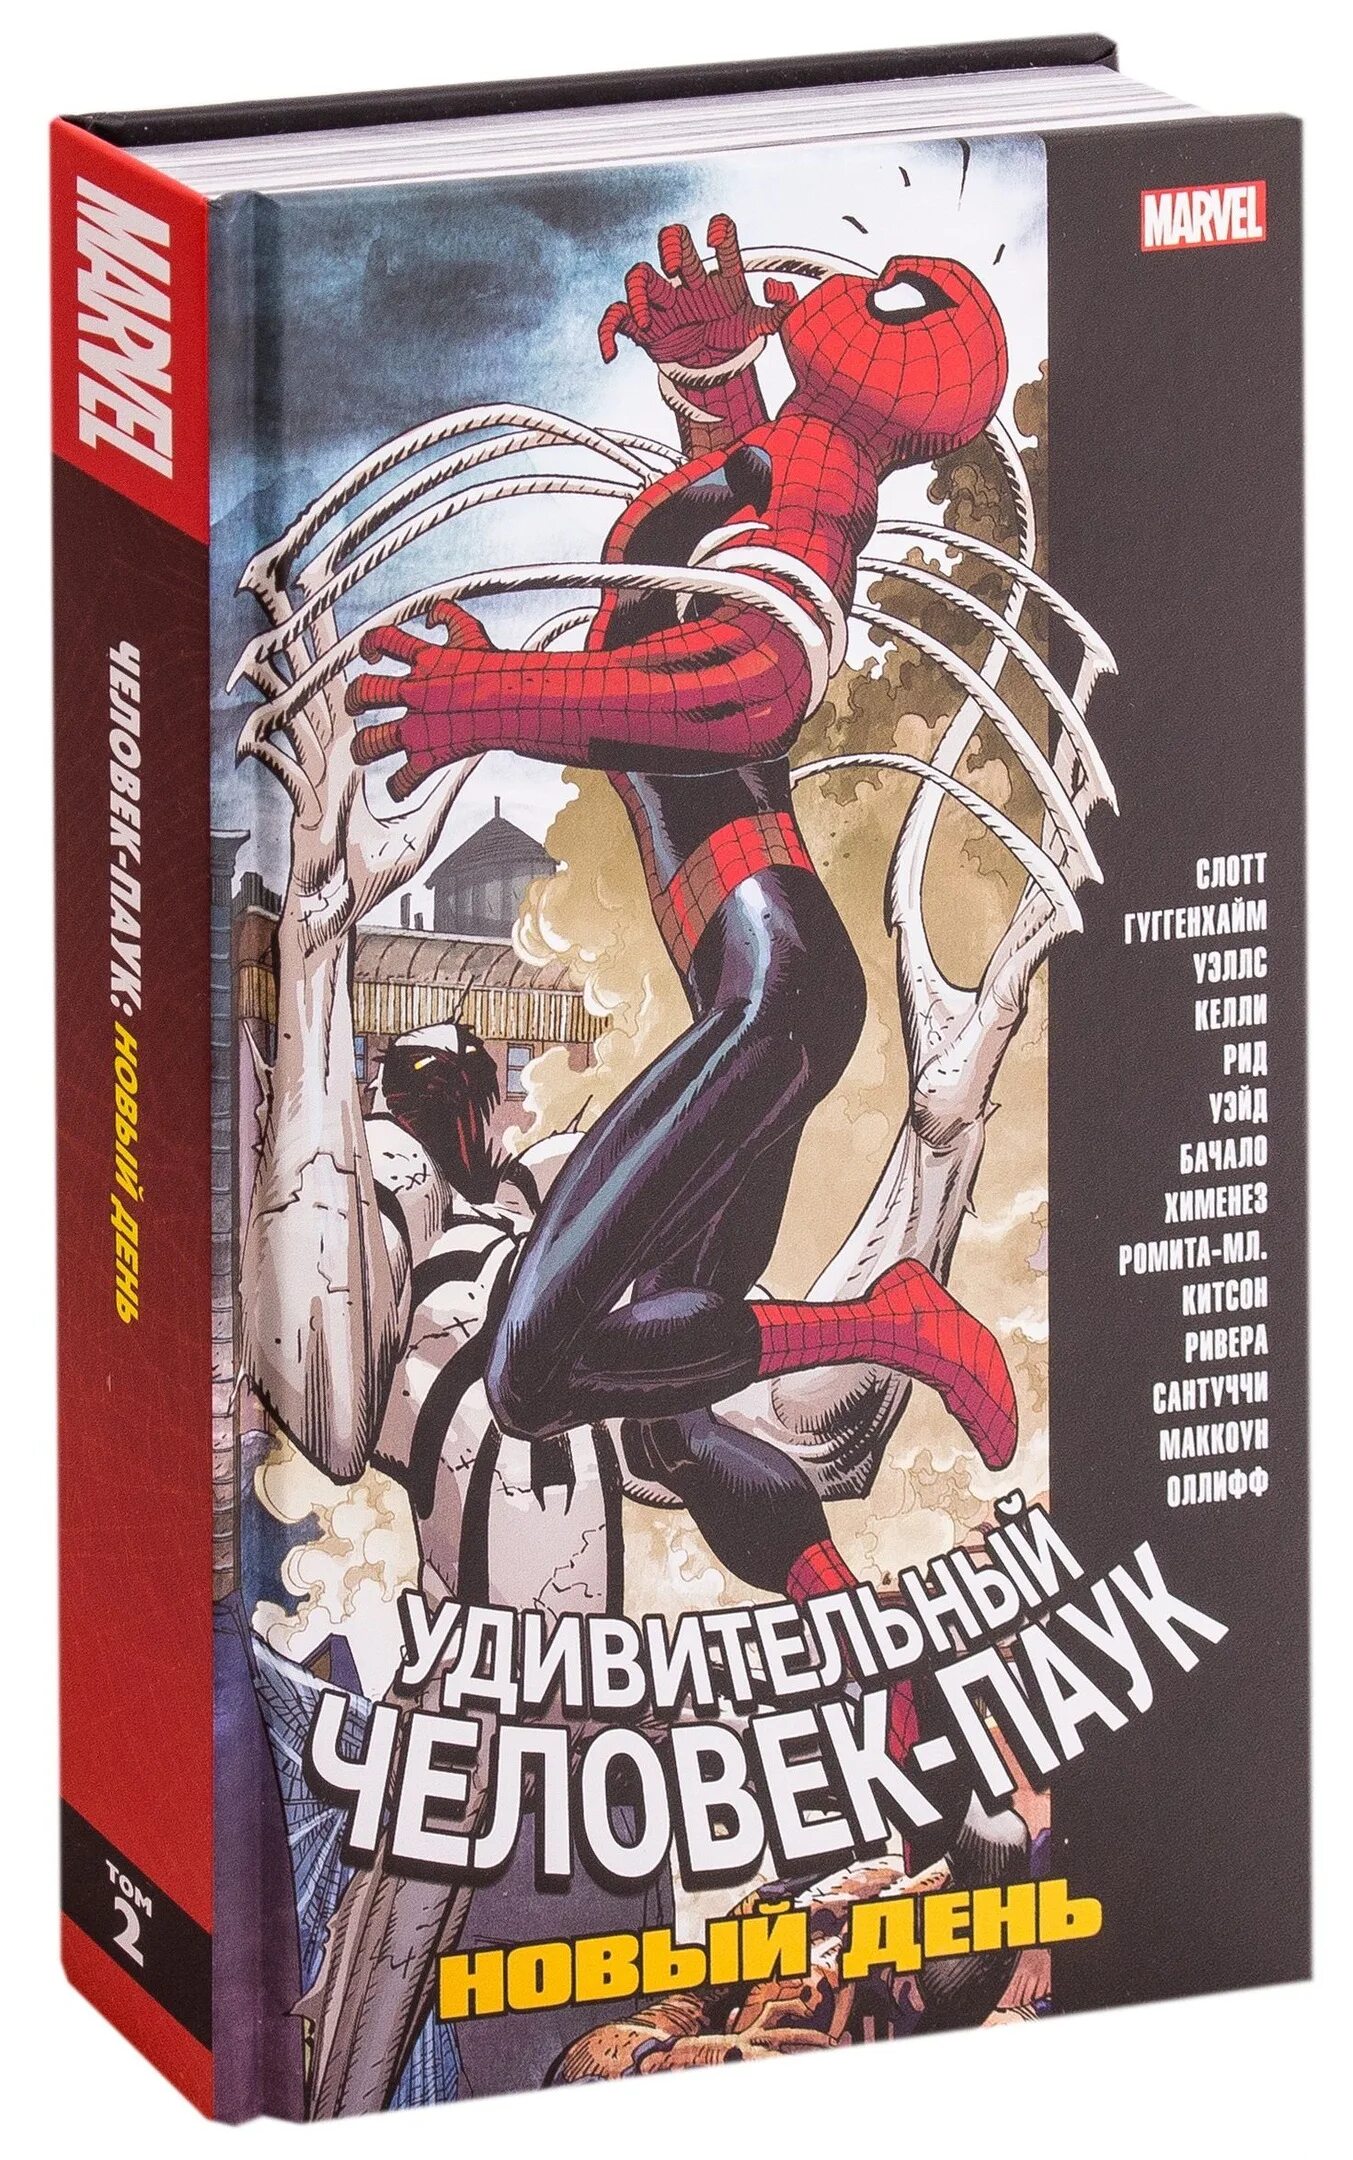 Том 2.0 1. Удивительный человек паук Дэн Слотт. Удивительный человек паук комикс том 1 Дэн Слотт. Удивительный человек-паук новый день том 2. Комикс классика Marvel: человек-паук. Том 1.